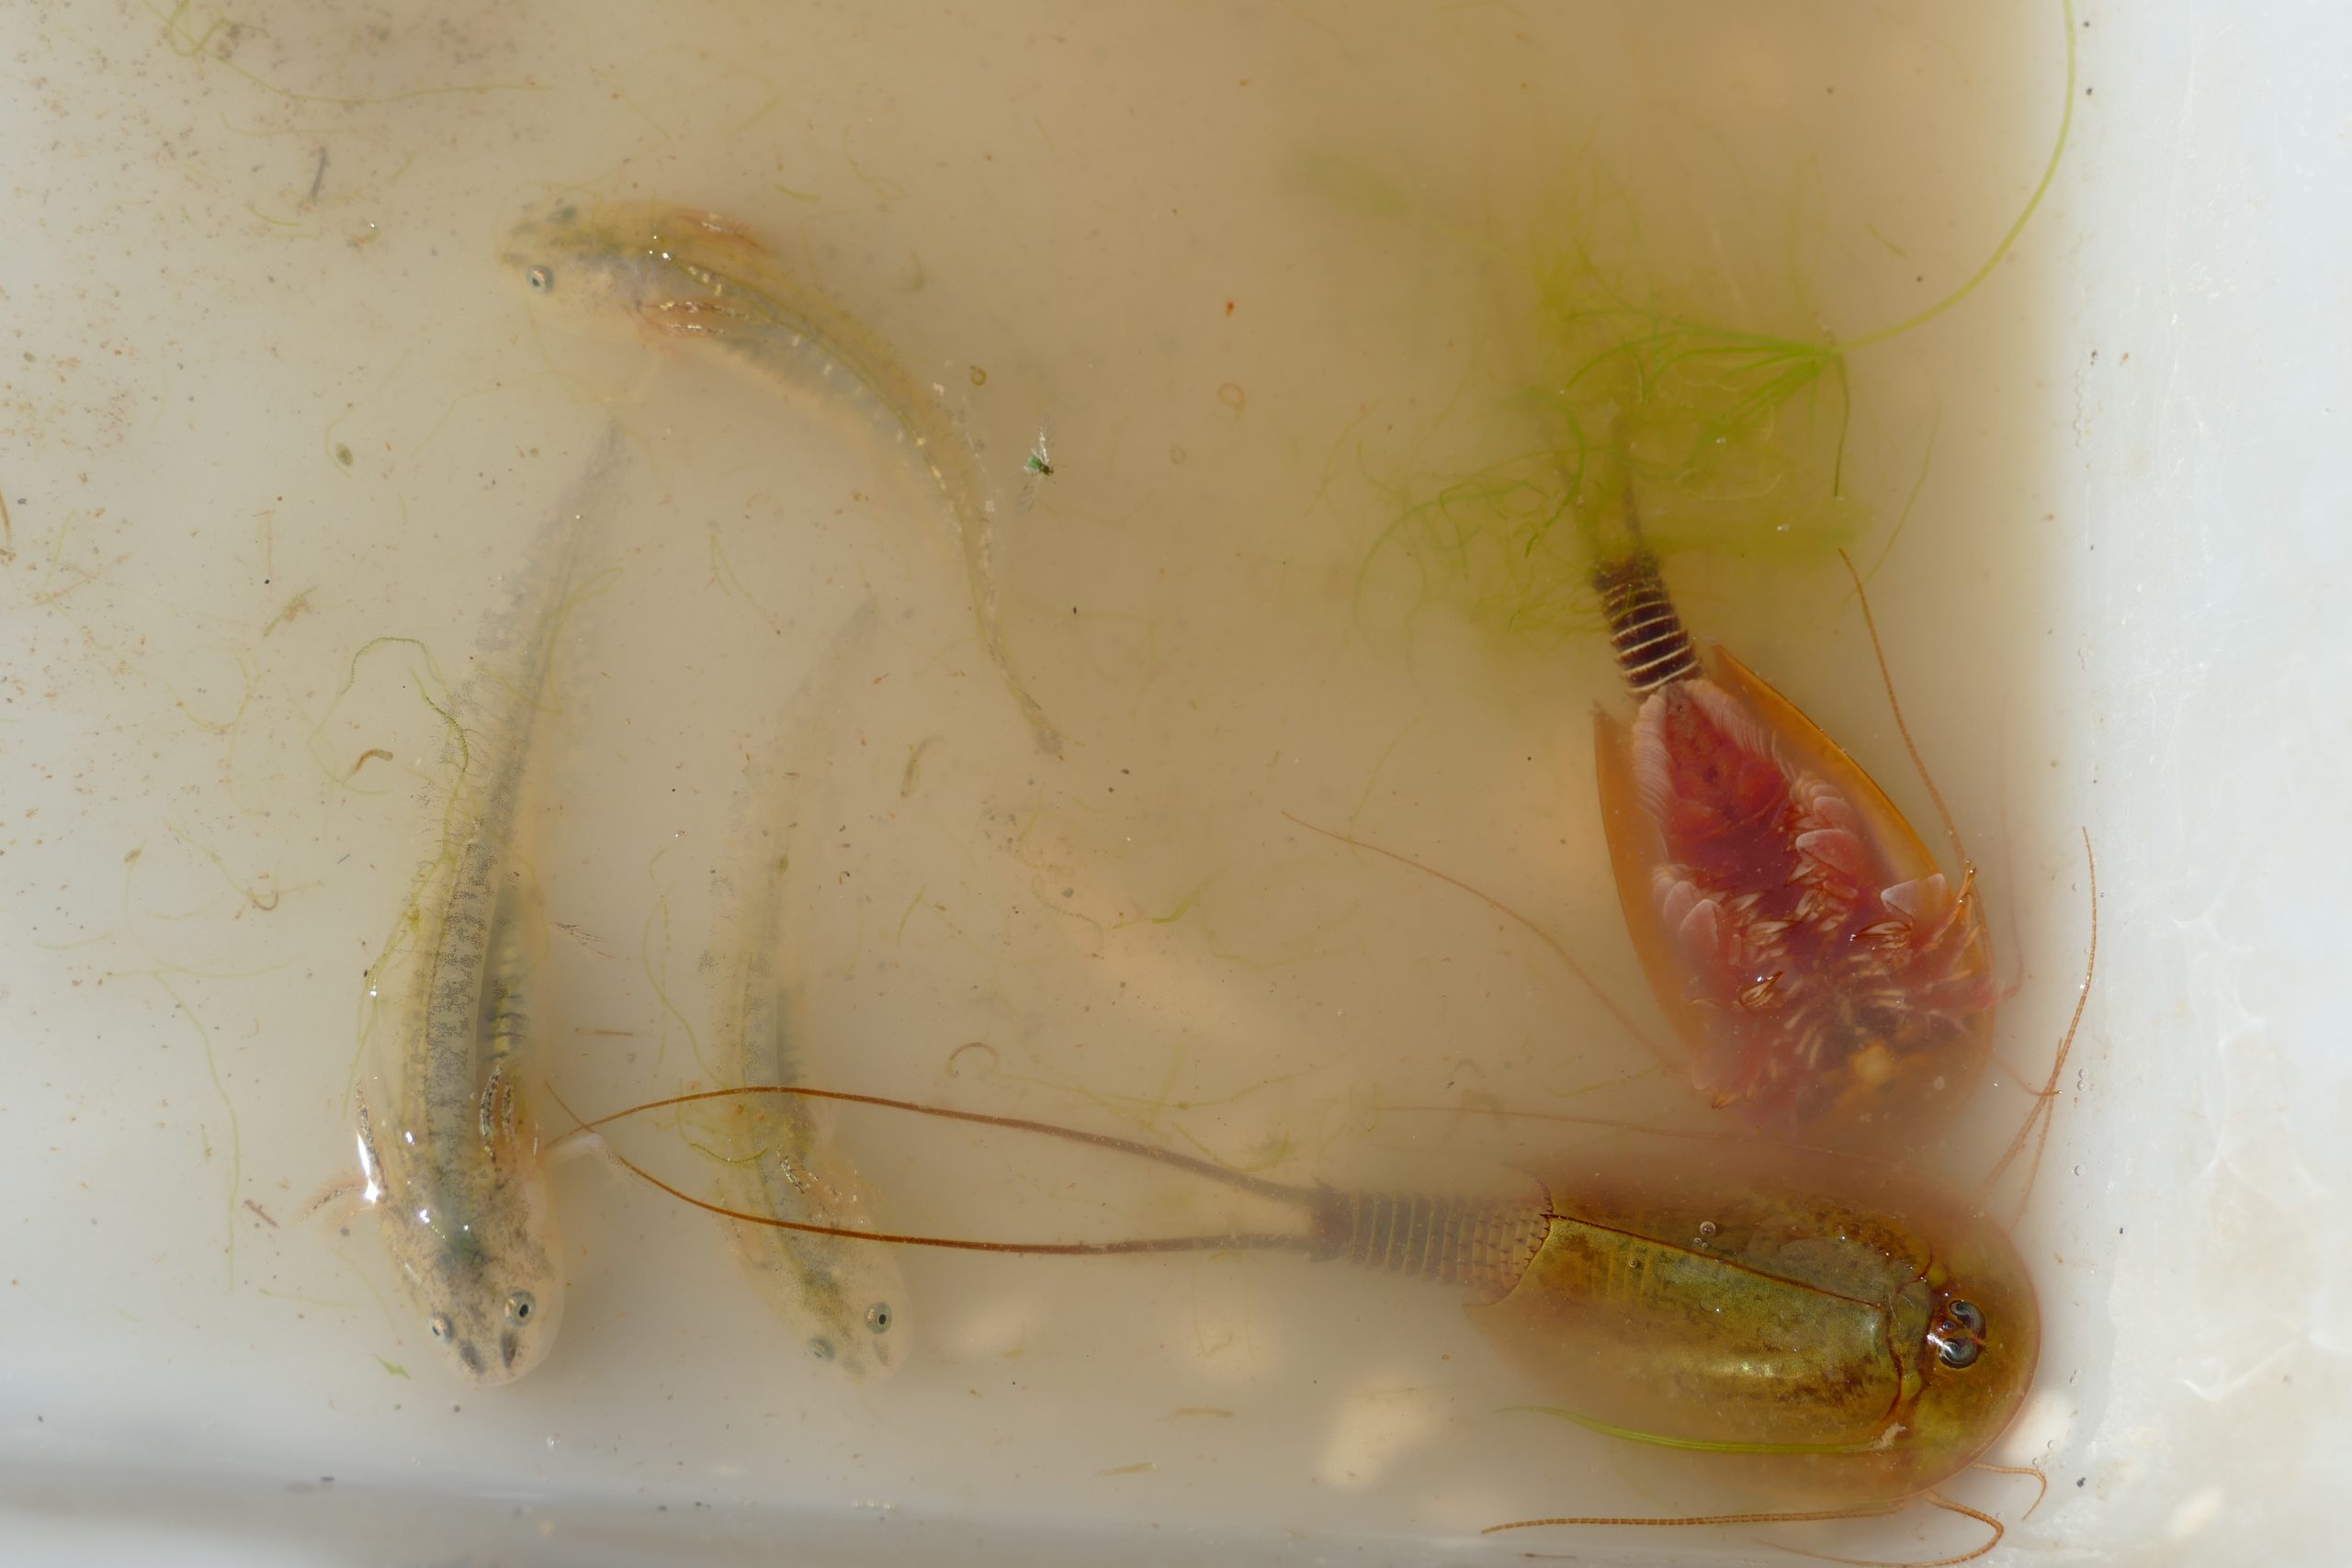 Triops mautitanicus, tadpole schrimp